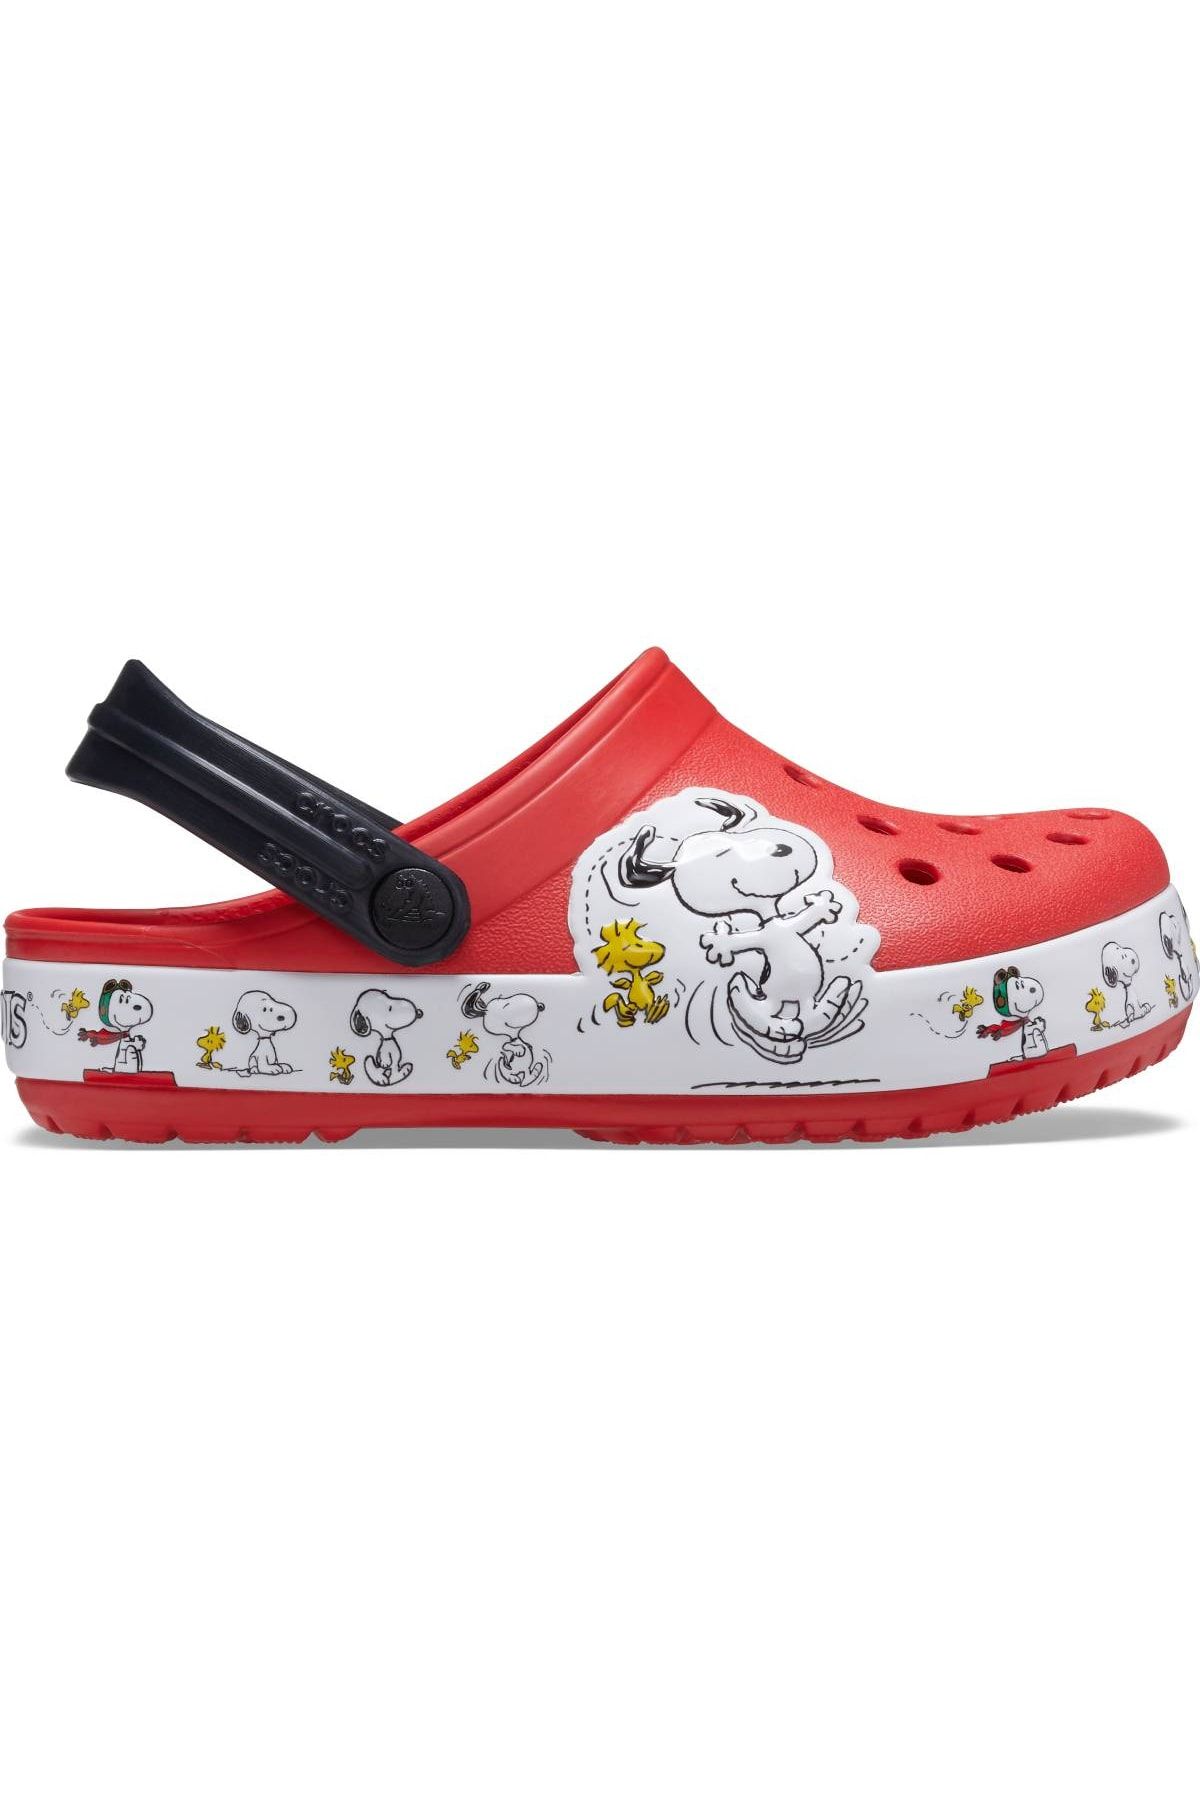 Crocs Crocs 206176-8c1 Crocs Fl Snoopy Woodstock Cg K Çocuk Sandalet